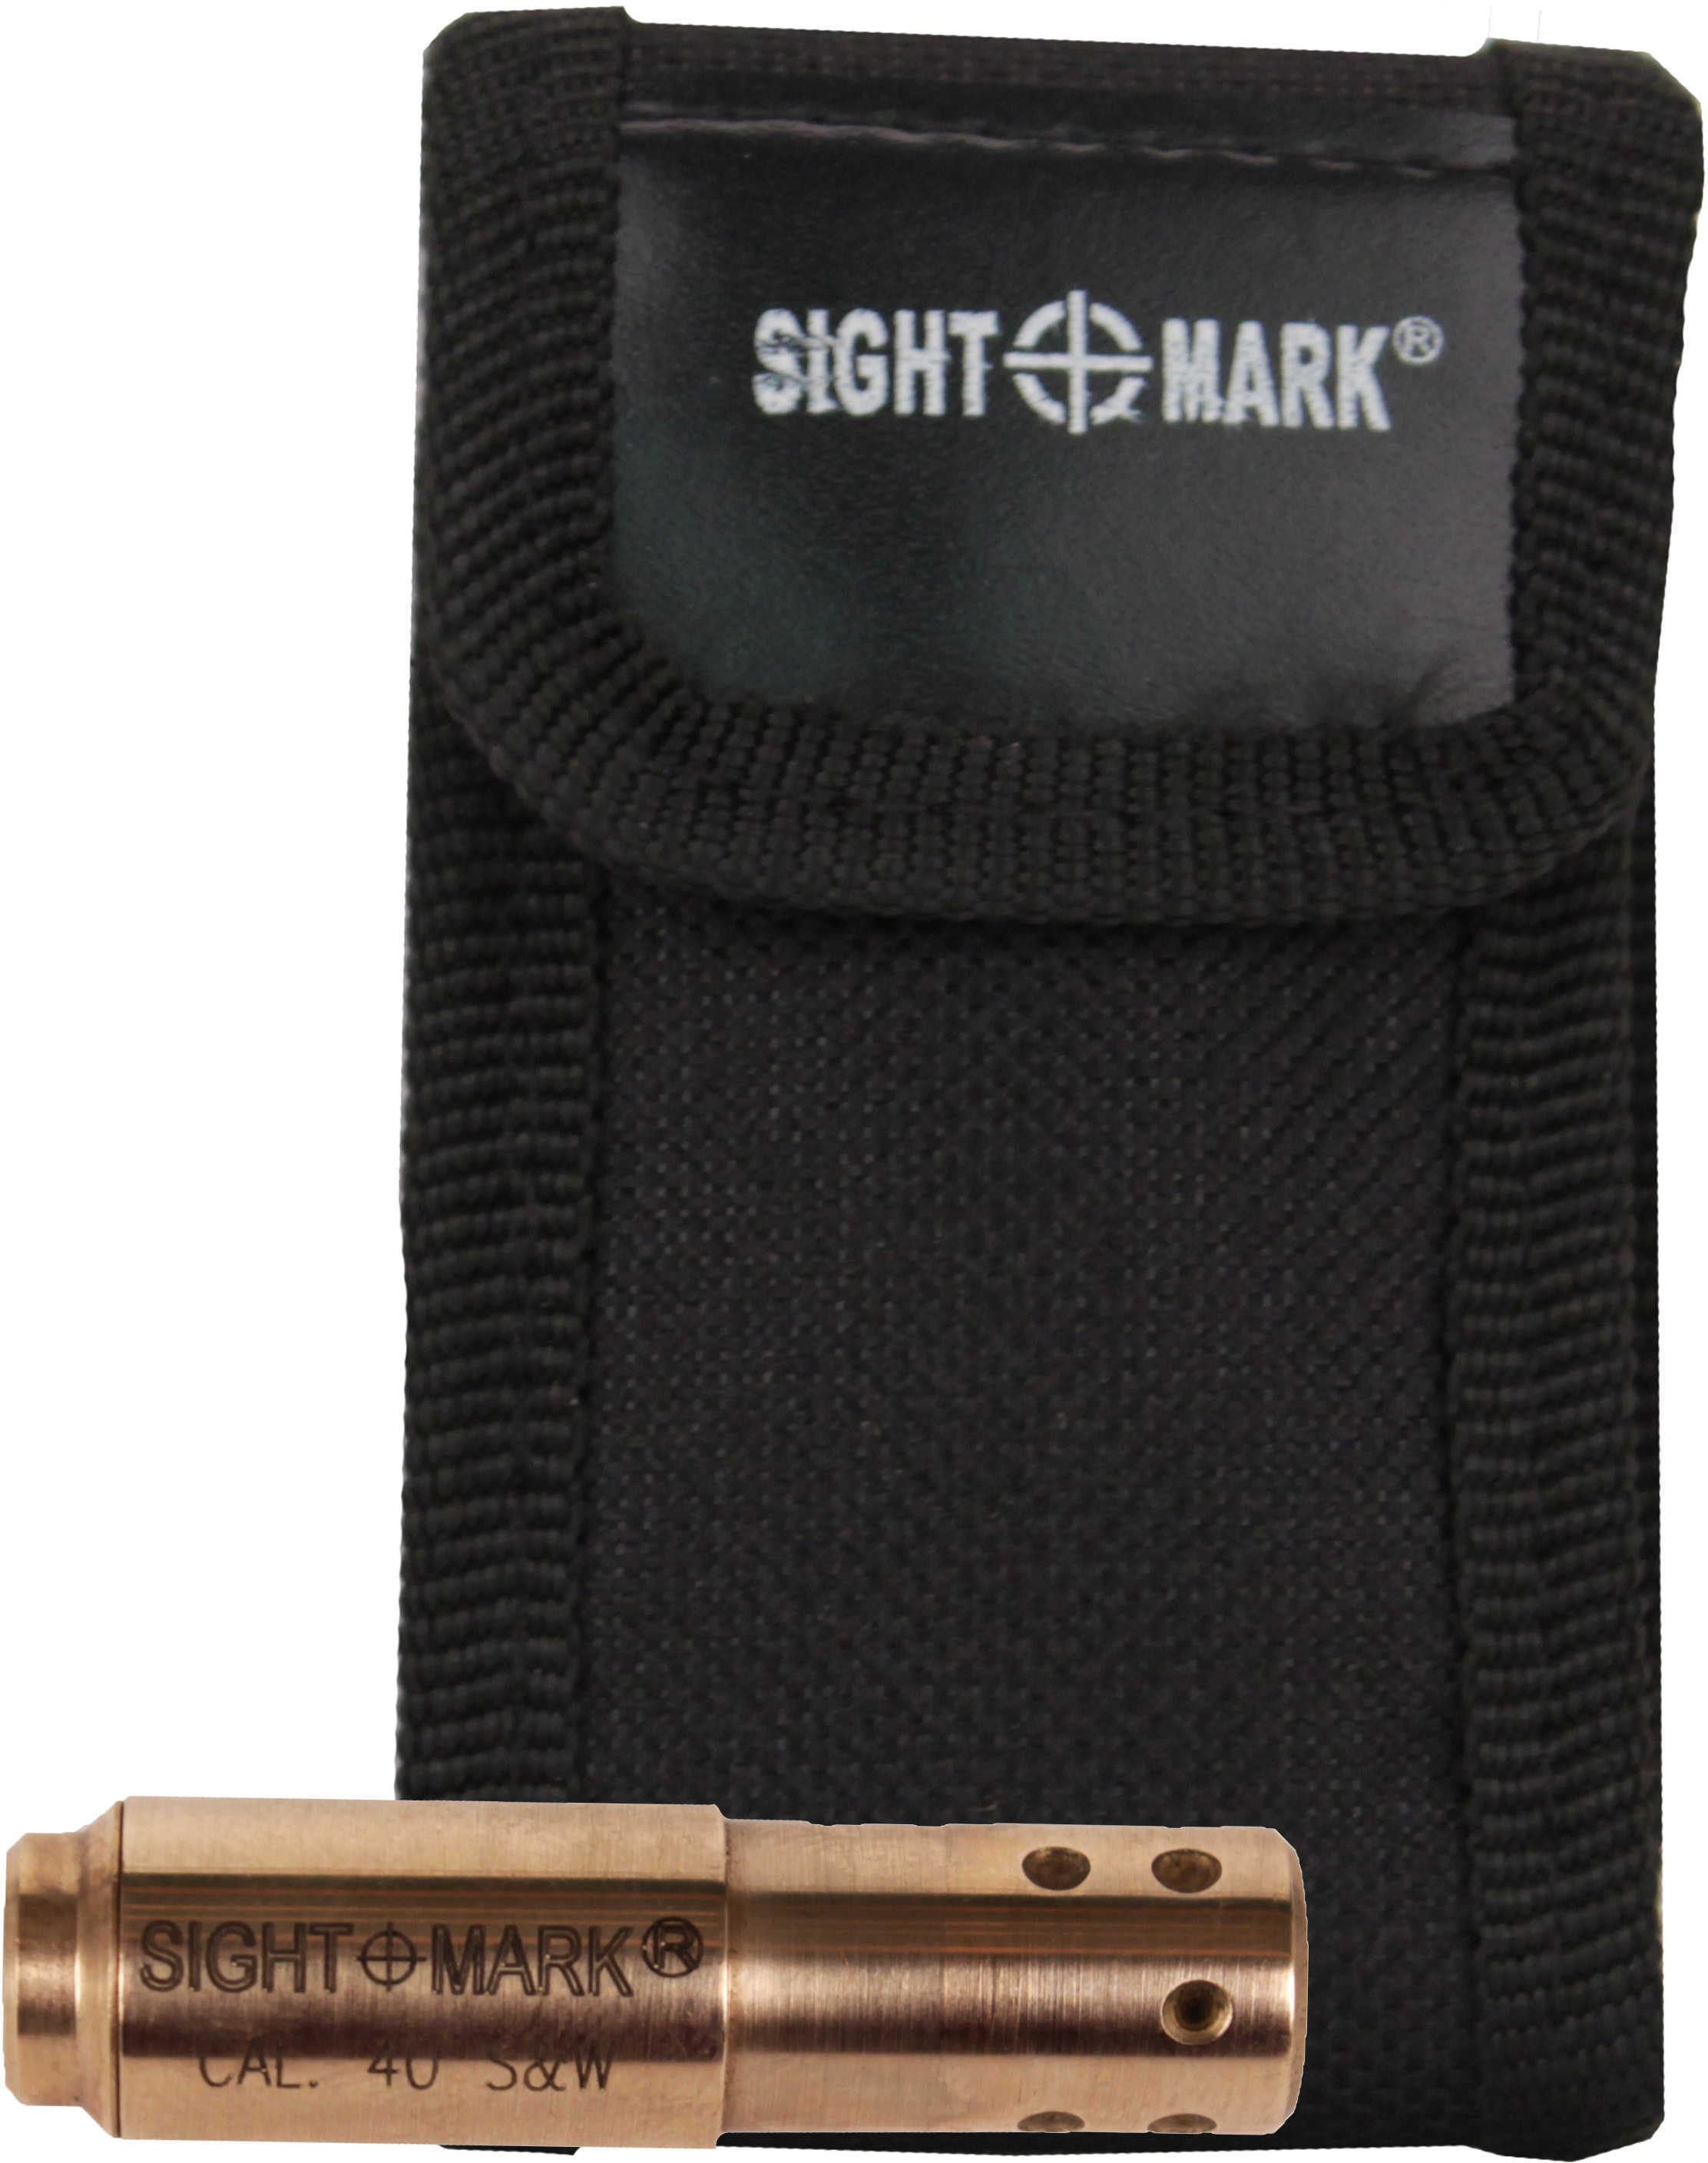 Sightmark .40 S&W Premium Laser Boresight